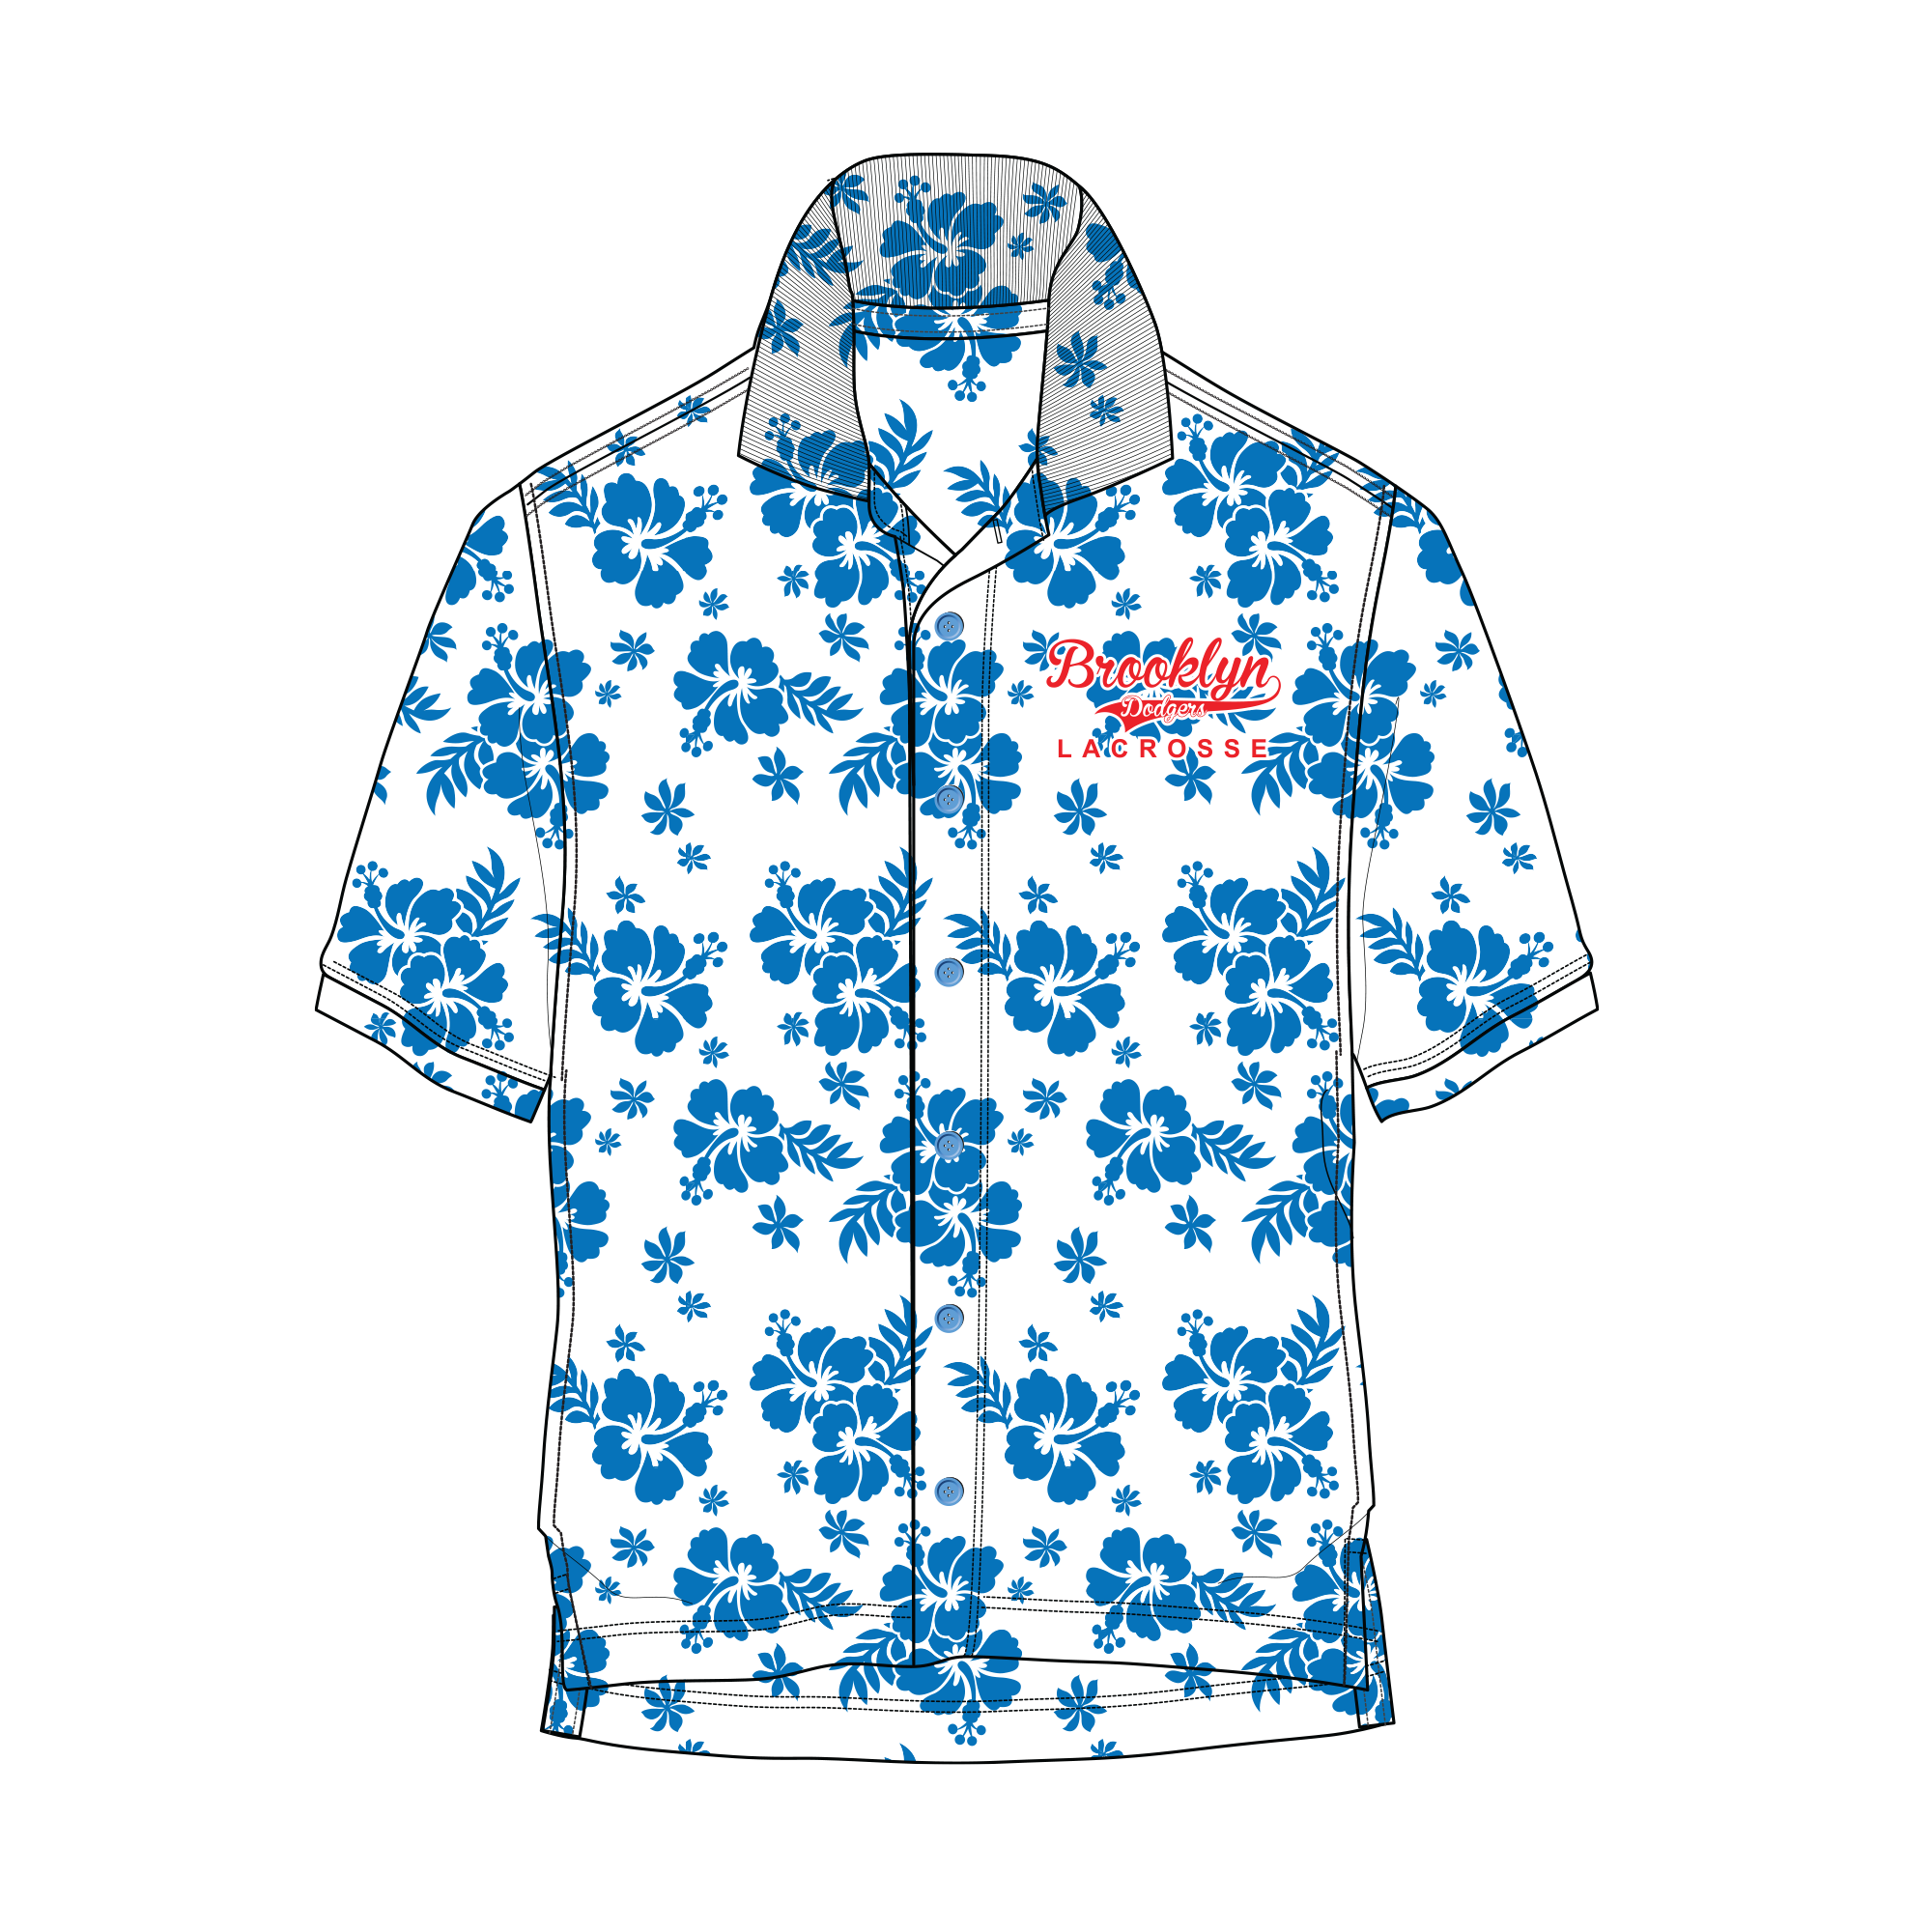 Dodgers Hawaiian Shirt And Shorts Inspired By Los Angeles Dodgers Hawaiian  Shirt Night 2023 Dodgers Hawaiian Shirt Day Dodgers Hawaiian Night Dodgers  Shirt Mlb Hawaiian Shirts For Men - Laughinks